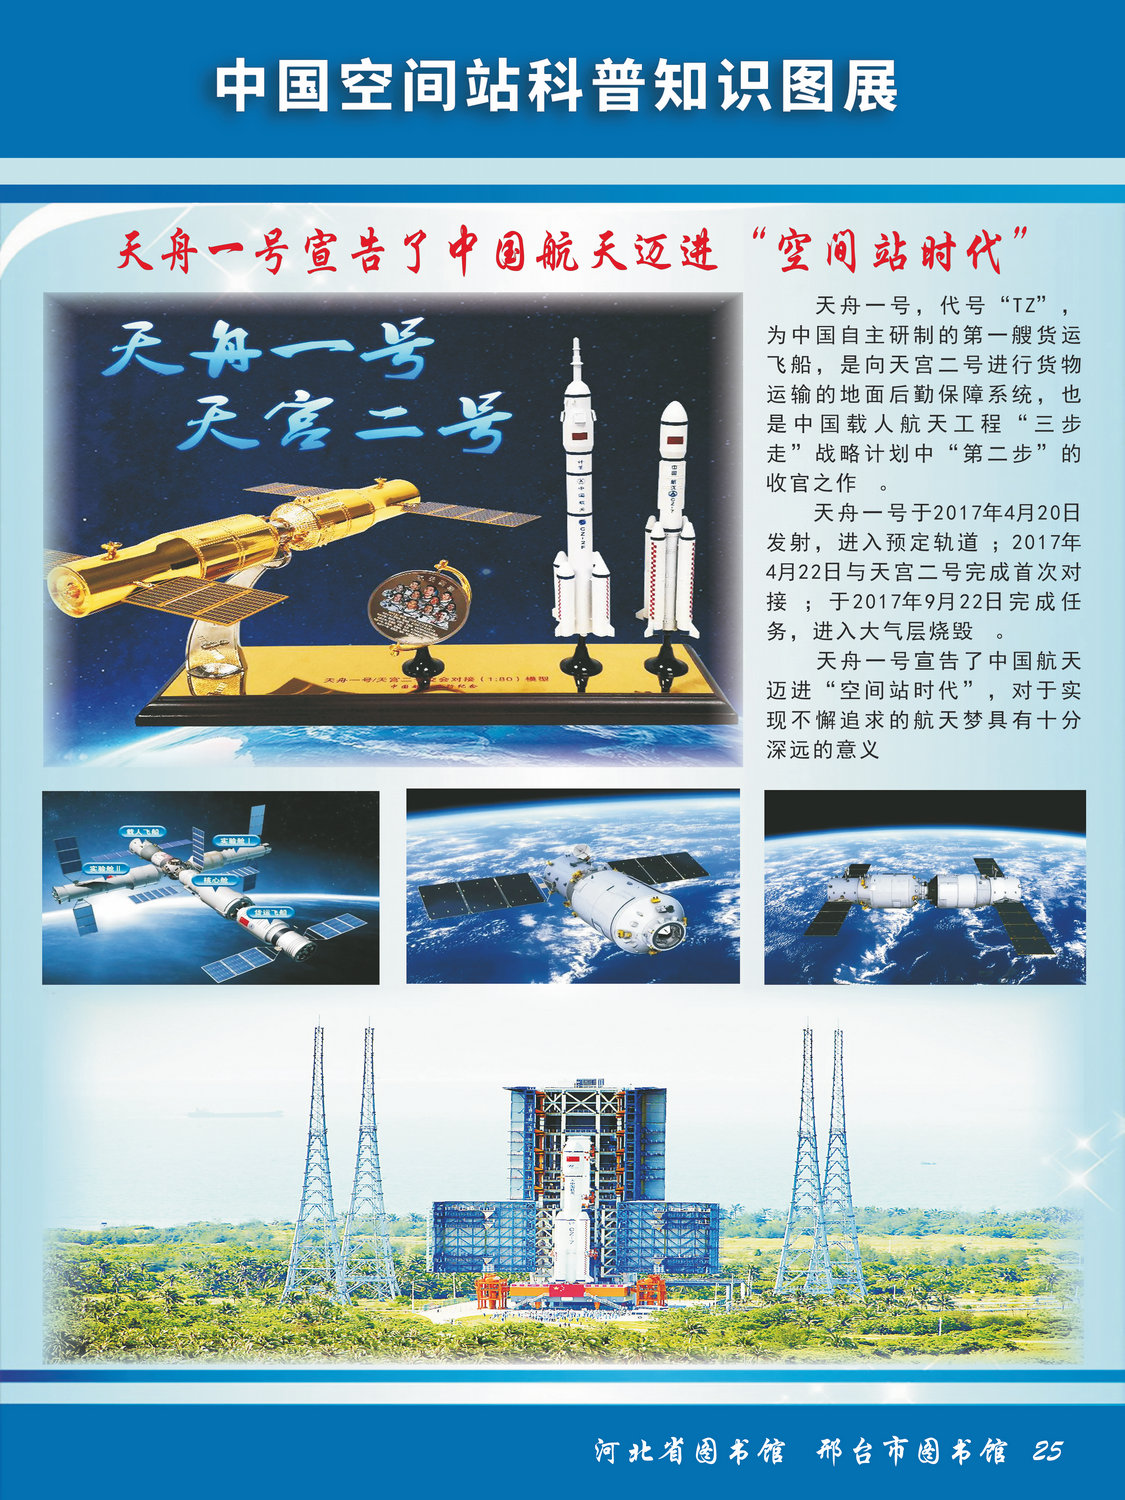 中国空间站科普知识图文展_图25